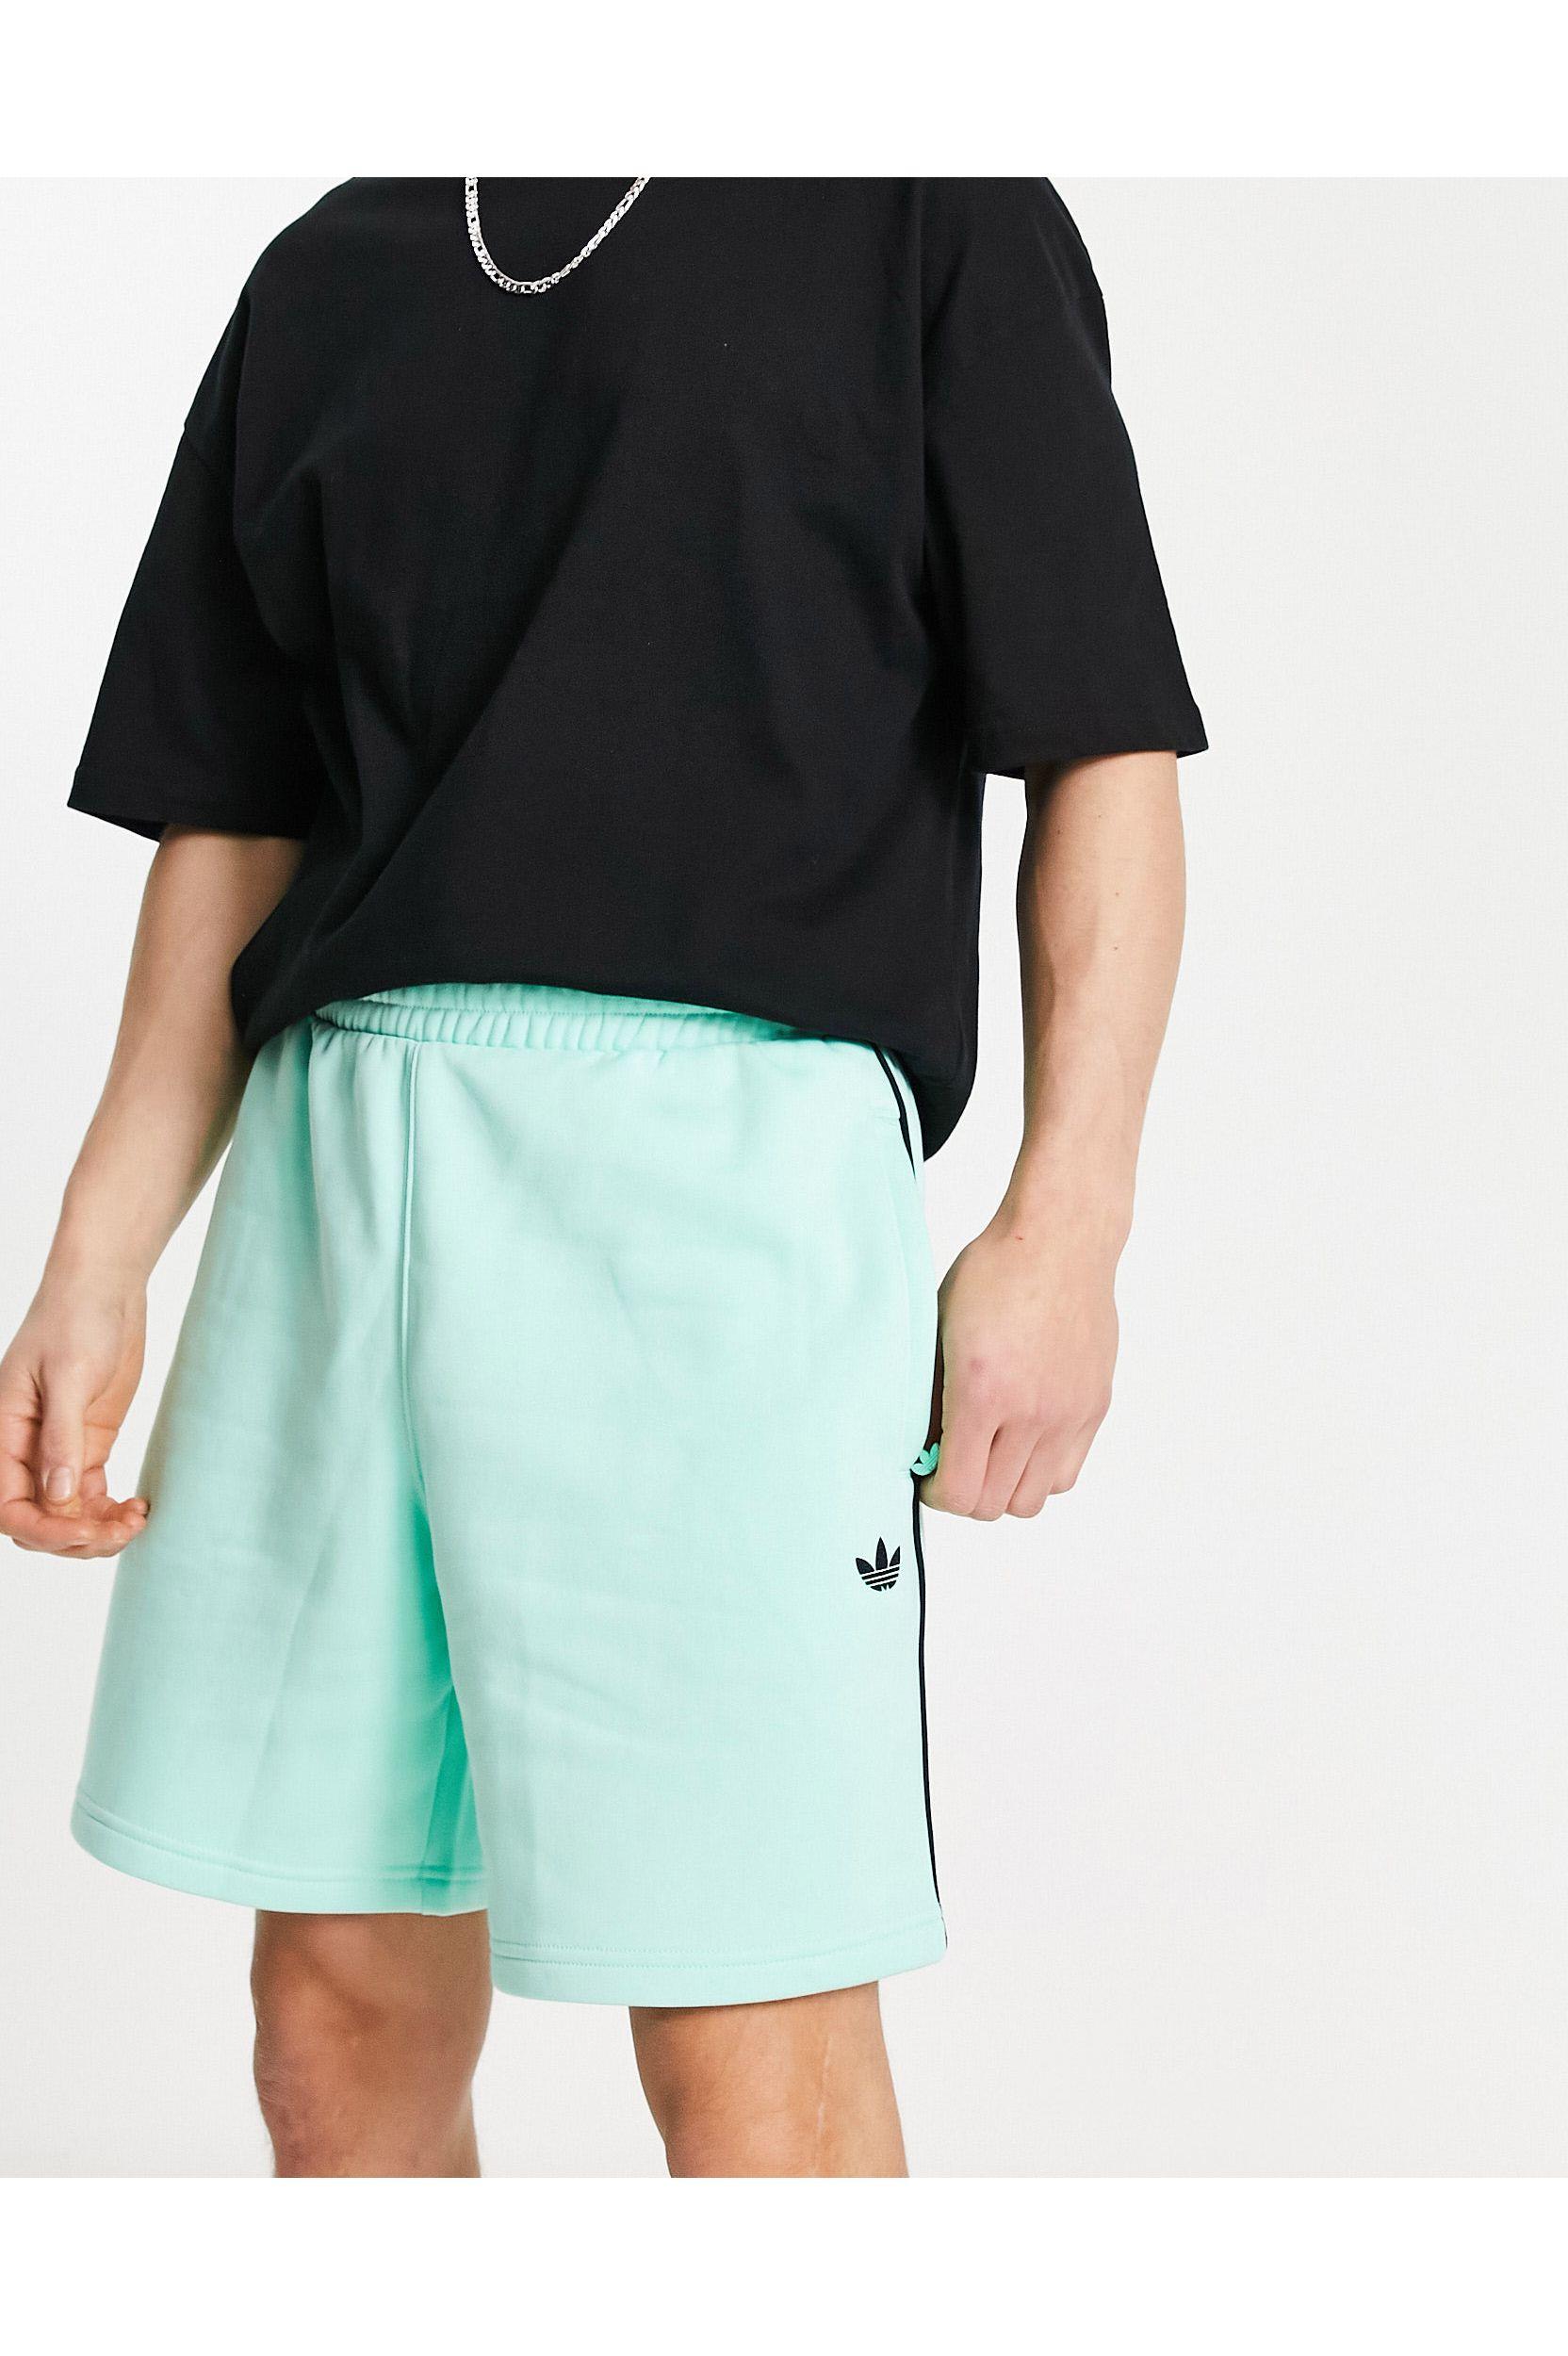 malo Erradicar Primitivo Pantalones cortos verdes con logo adicolor next adidas Originals de hombre  de color Blanco | Lyst